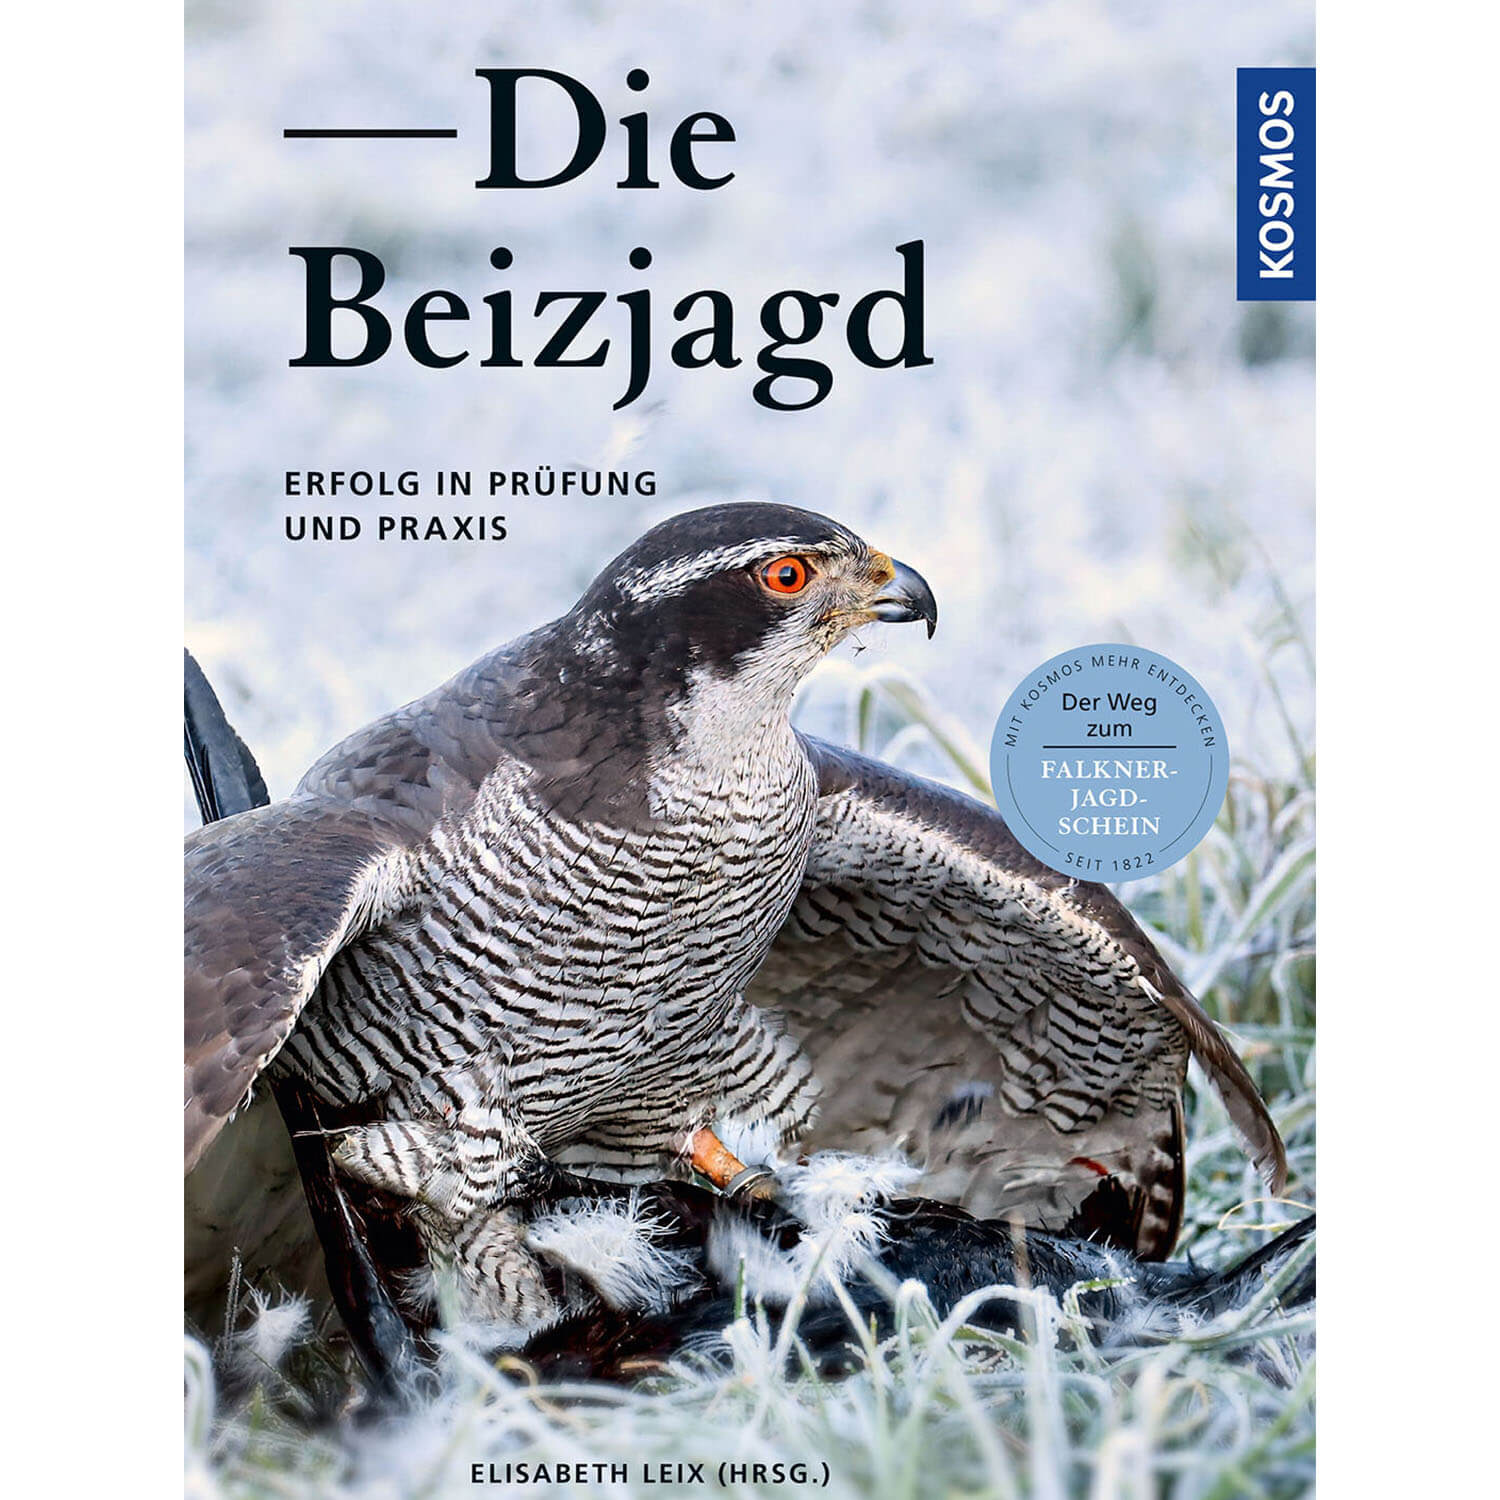 Die Beizjagd - Buch - Elisabeth Leix - Jagdbücher